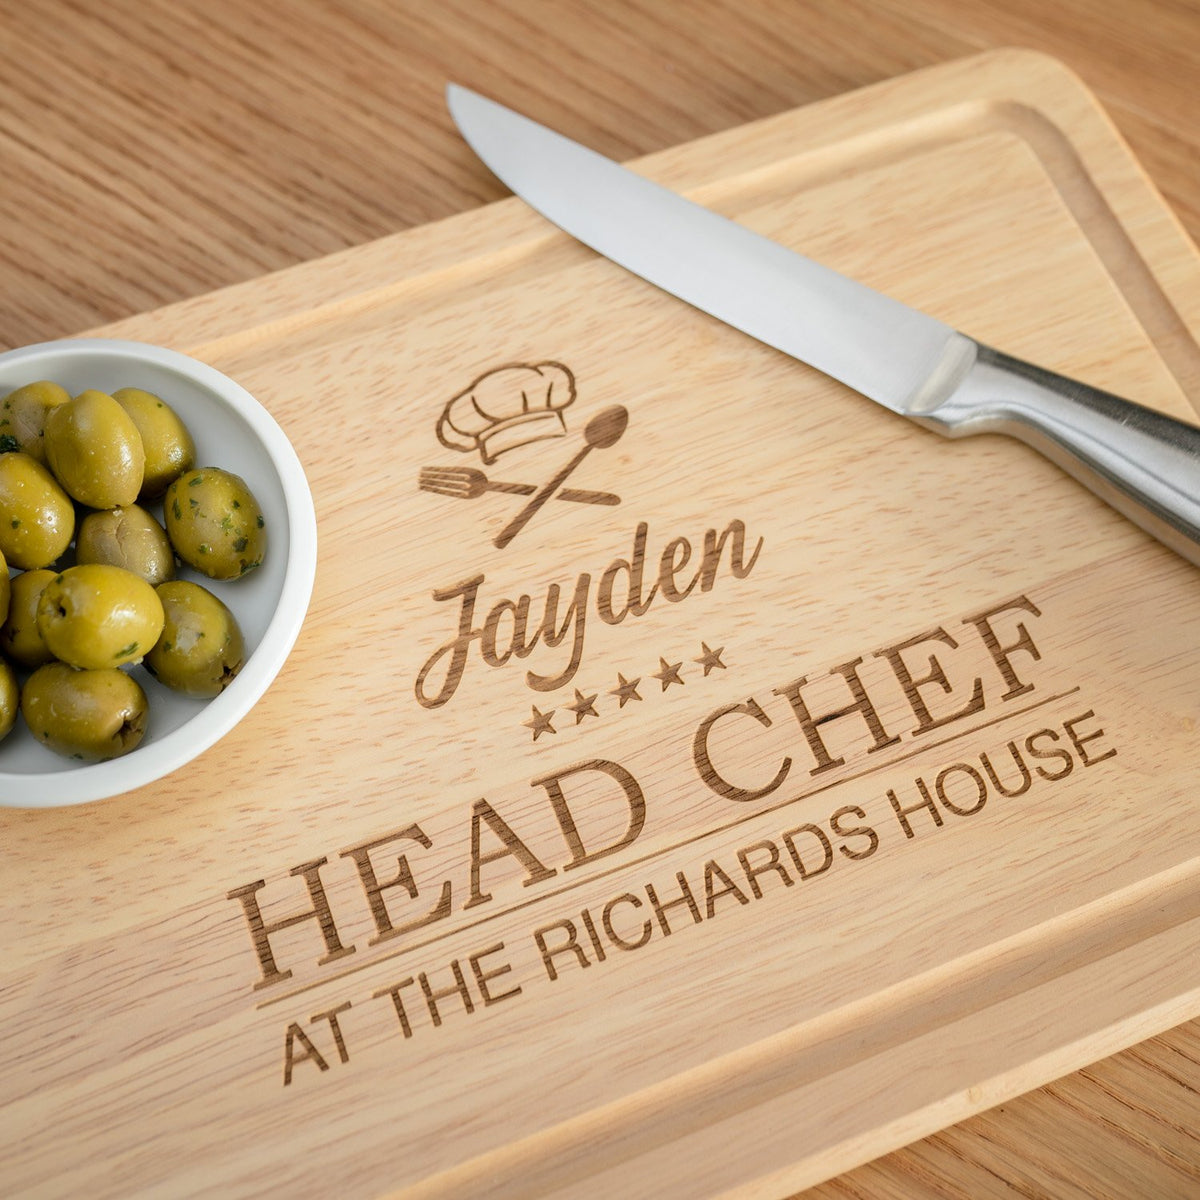 Head Chef Chopping Board